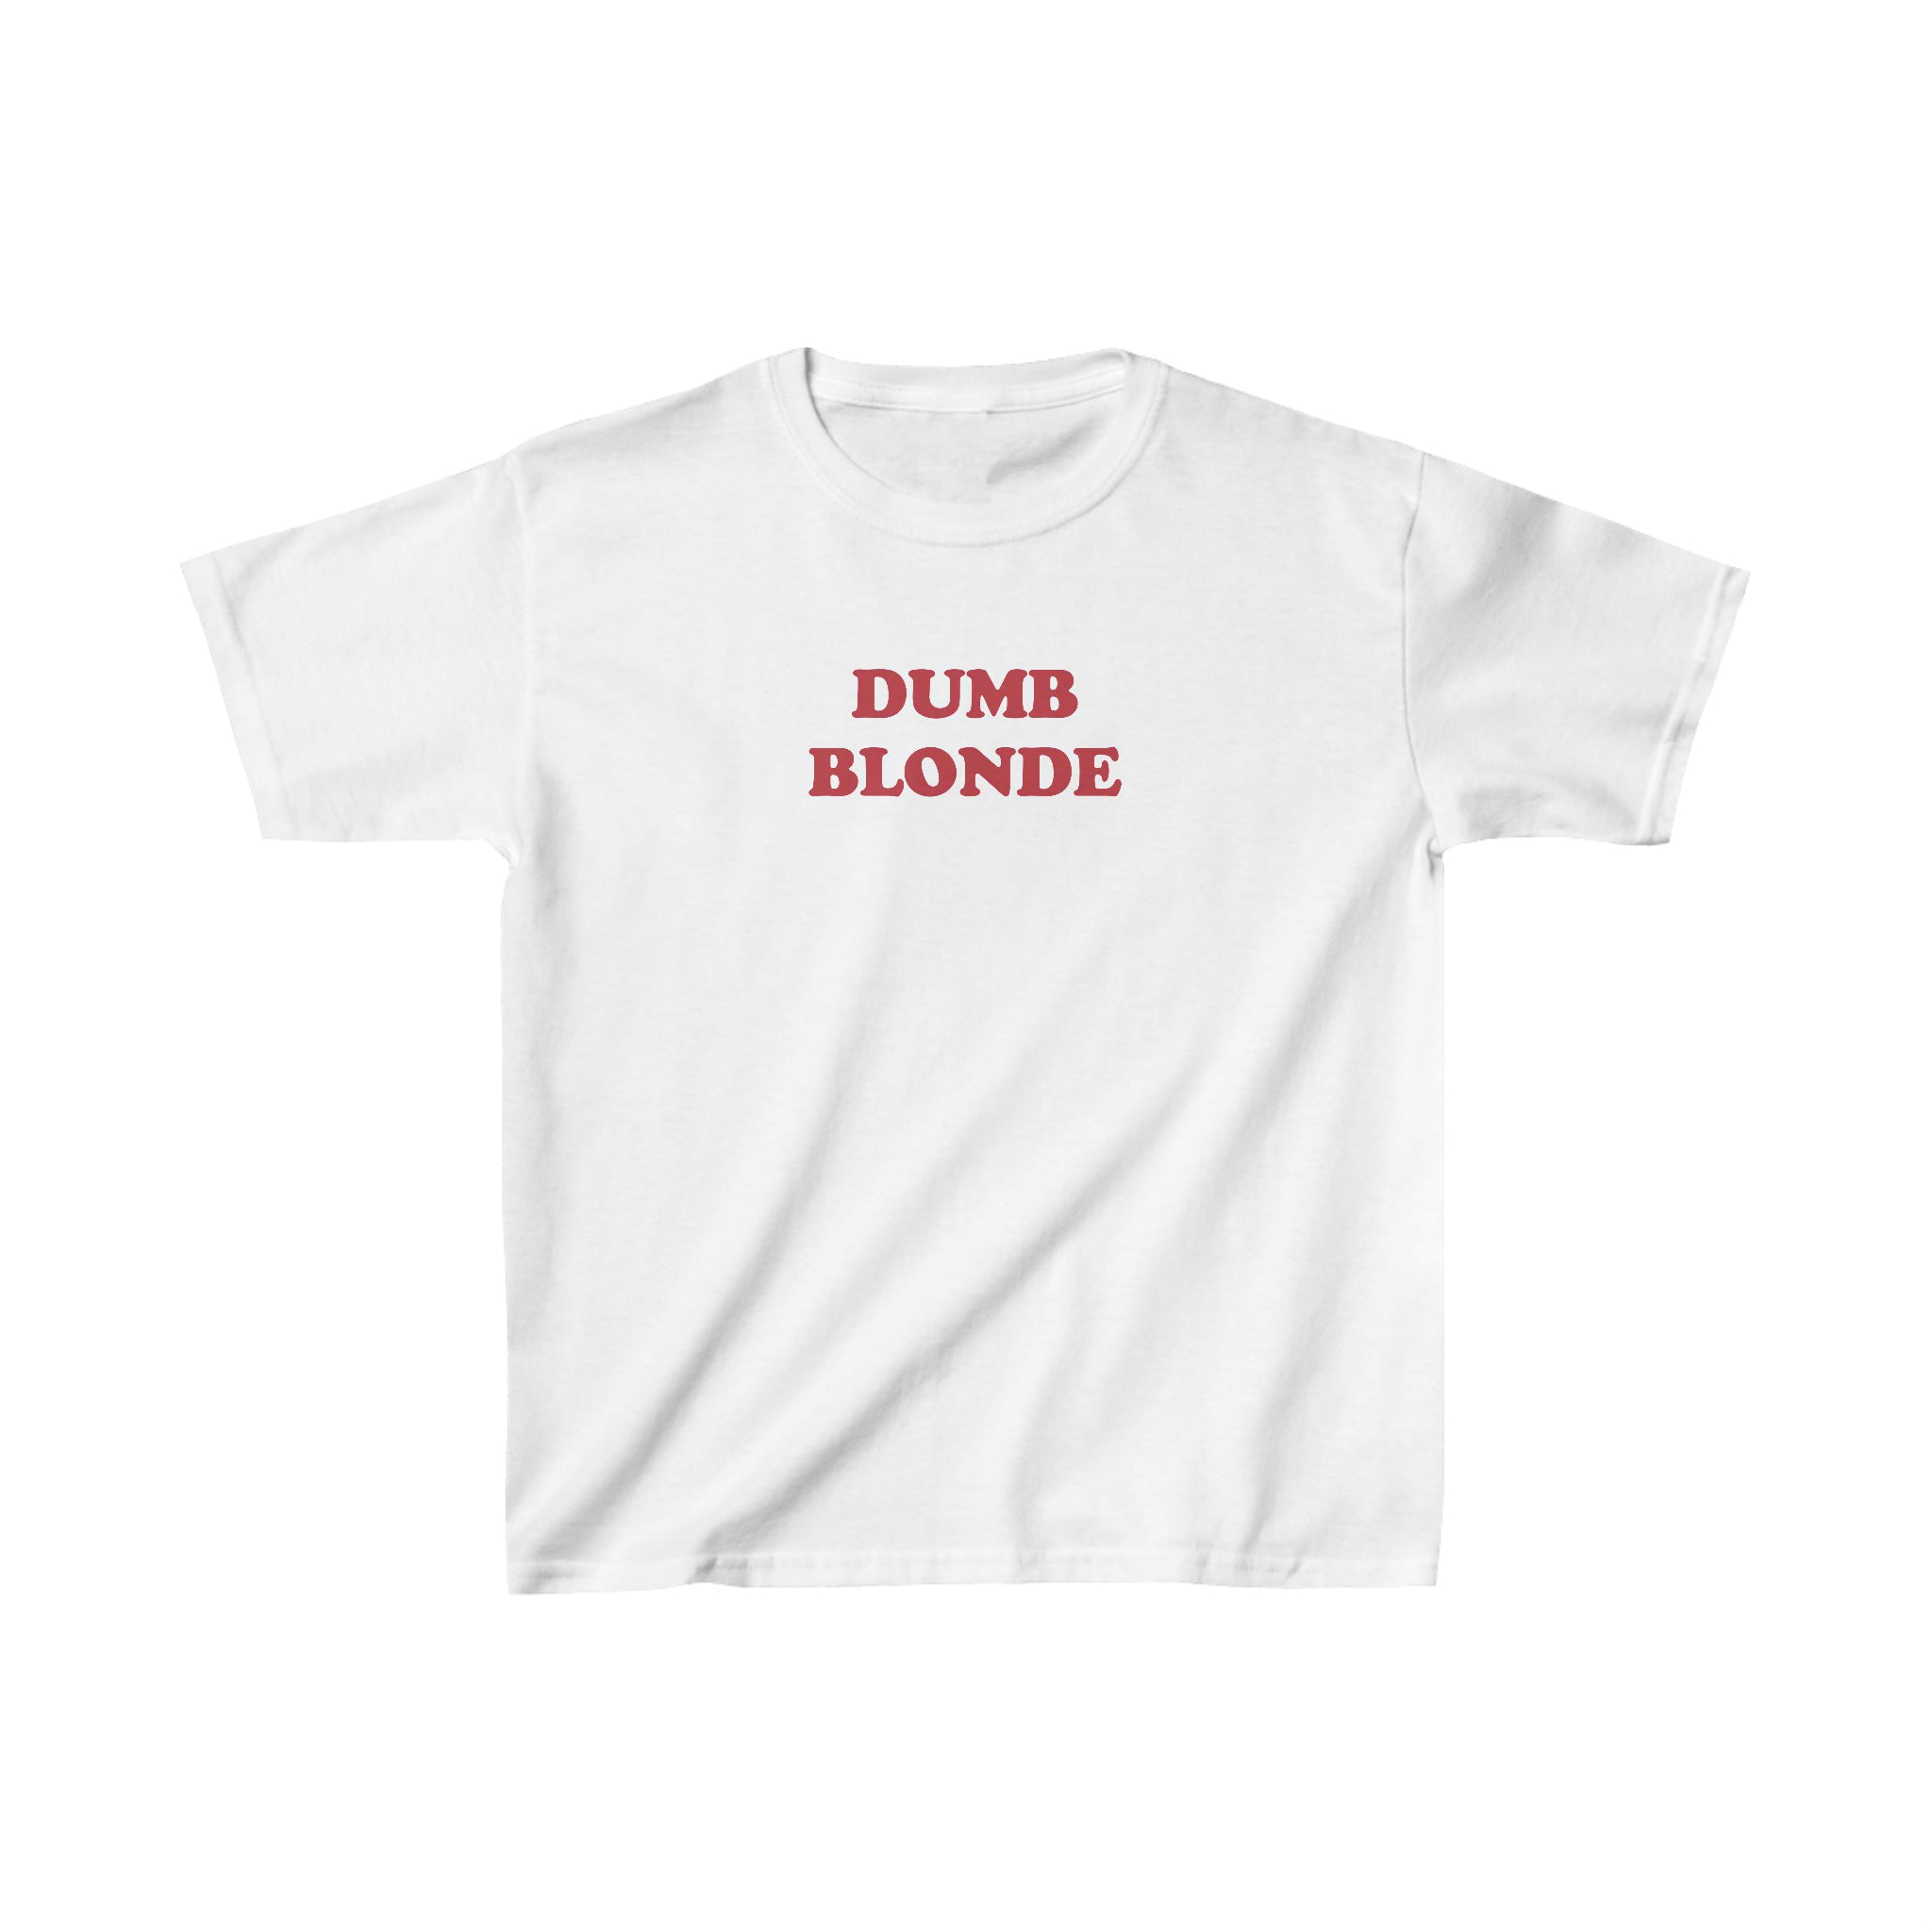 'Dumb Blonde' baby tee - In Print We Trust